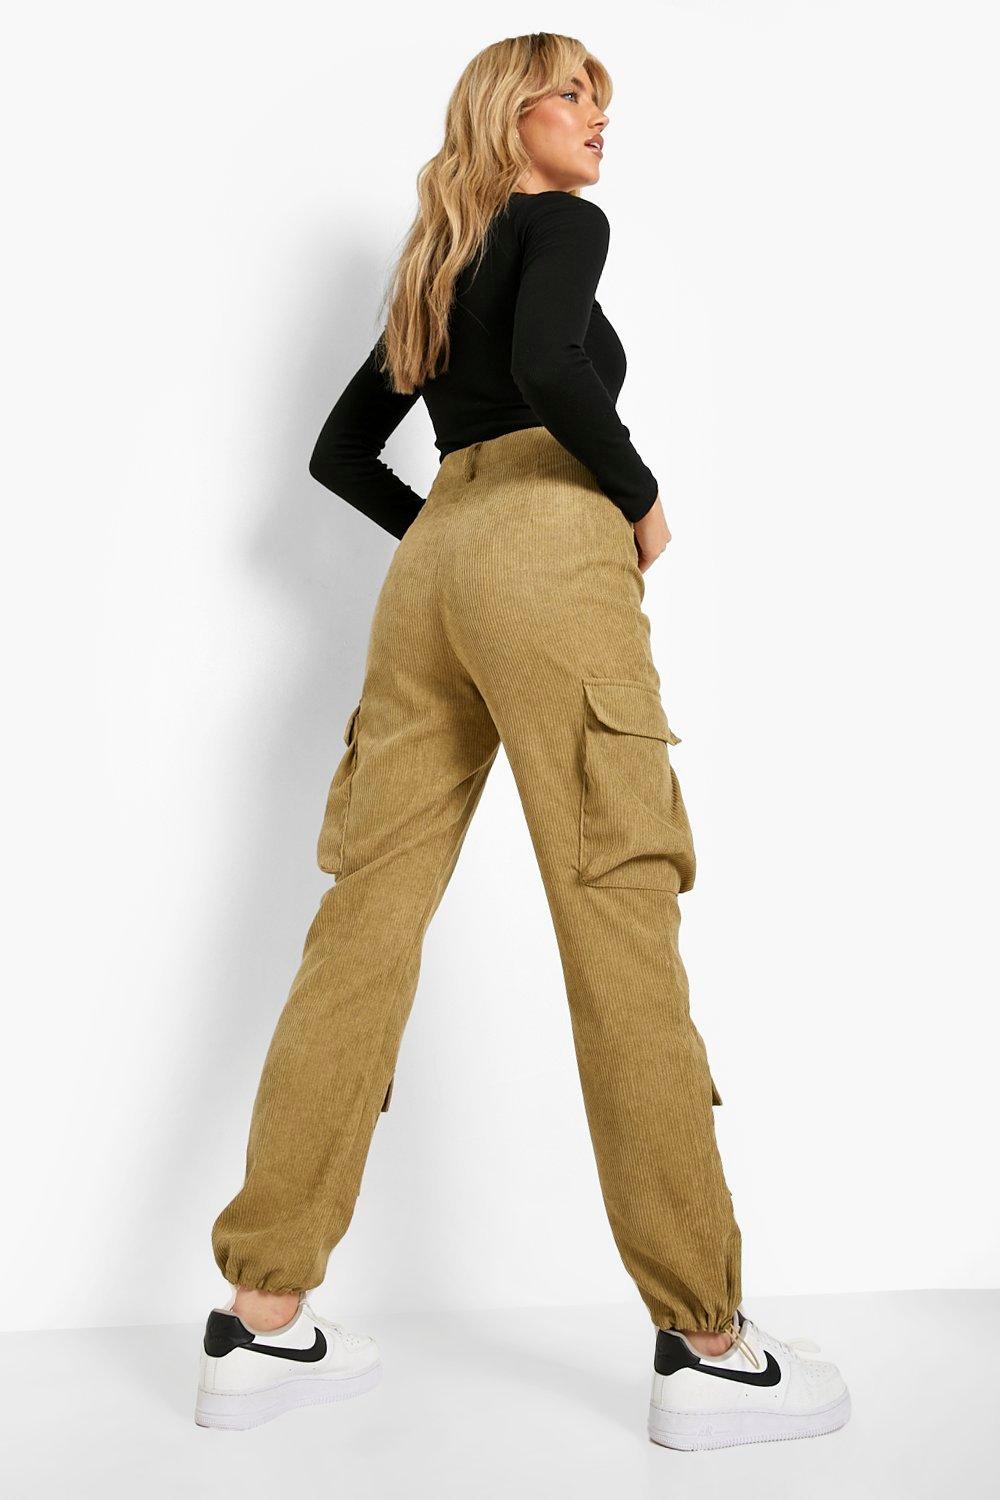 Pantalon cargo femme sexy en maille